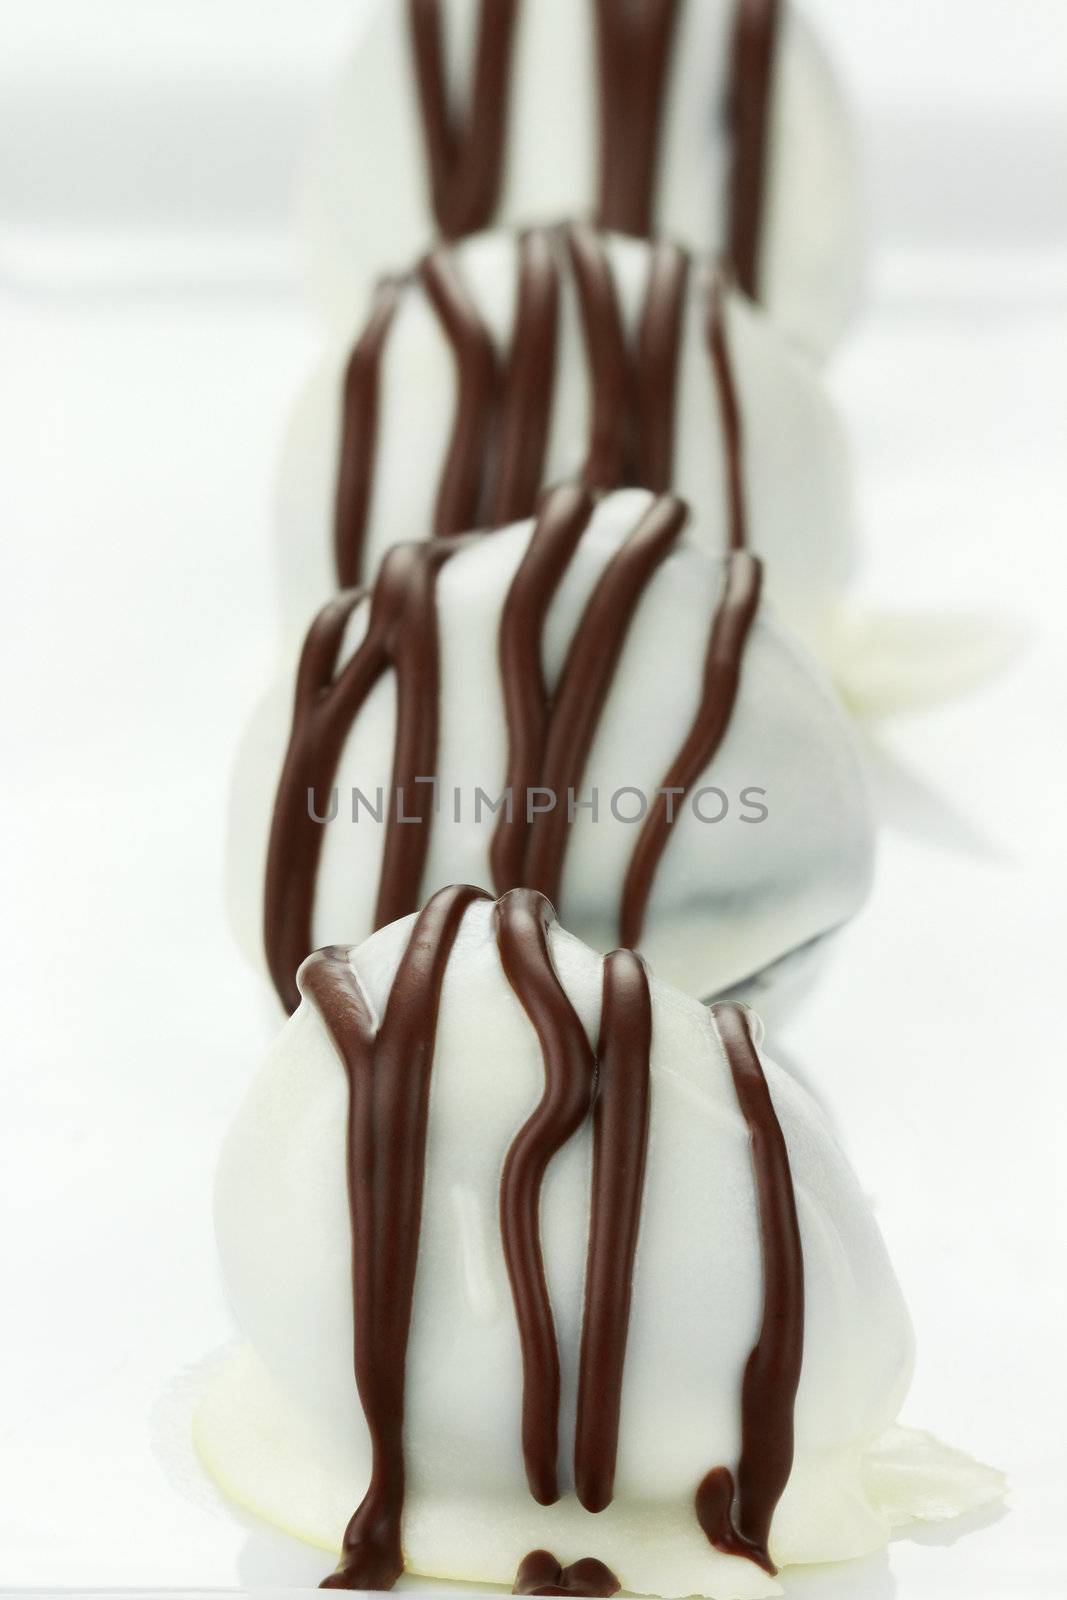 White Chocolate Truffles by StephanieFrey